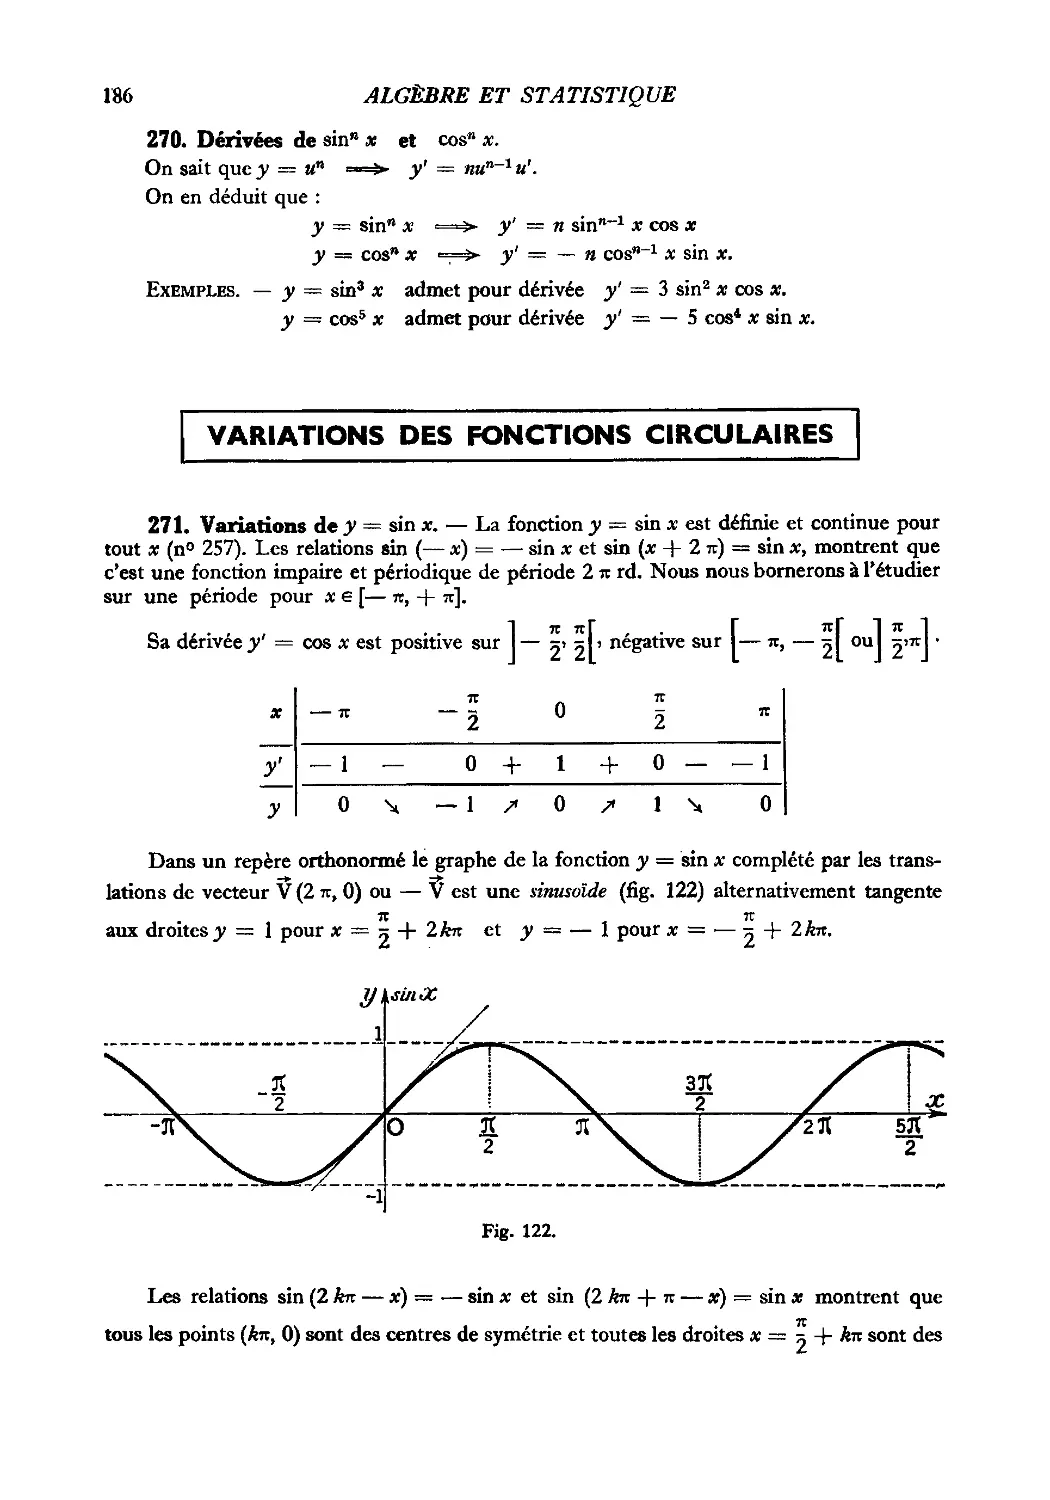 270. Dérivées de sin^n x et cos^n x
Variations des fonctions circulaires